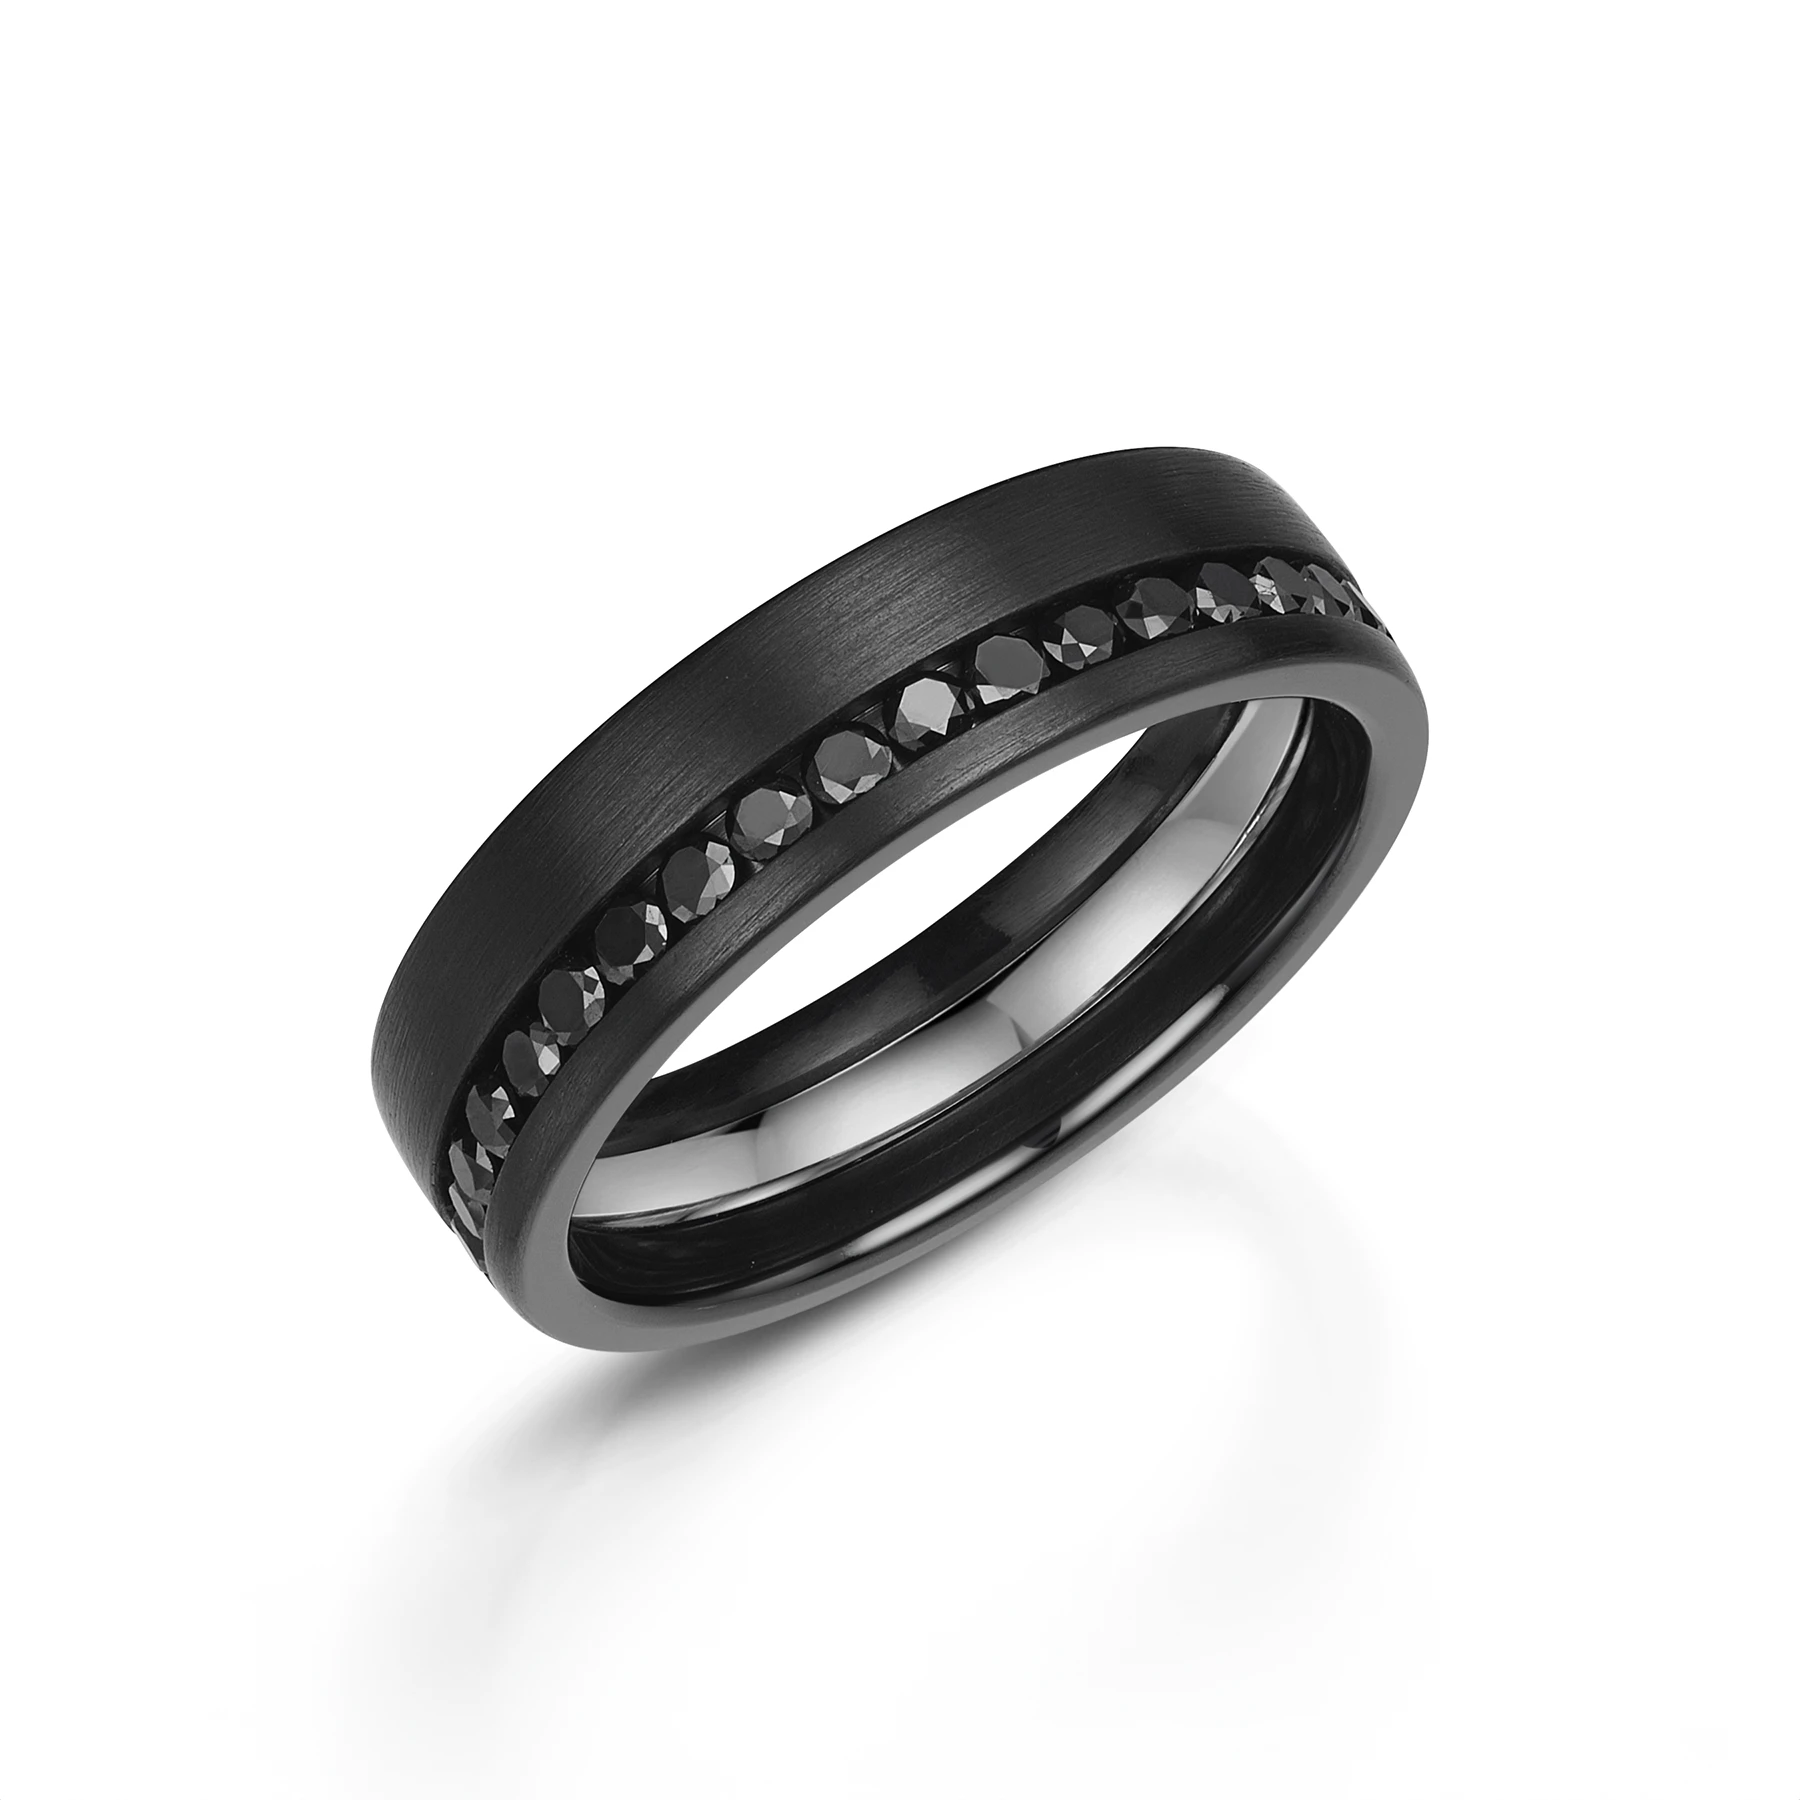 Black Diamond & Zirconium Wedding Ring - Half Set